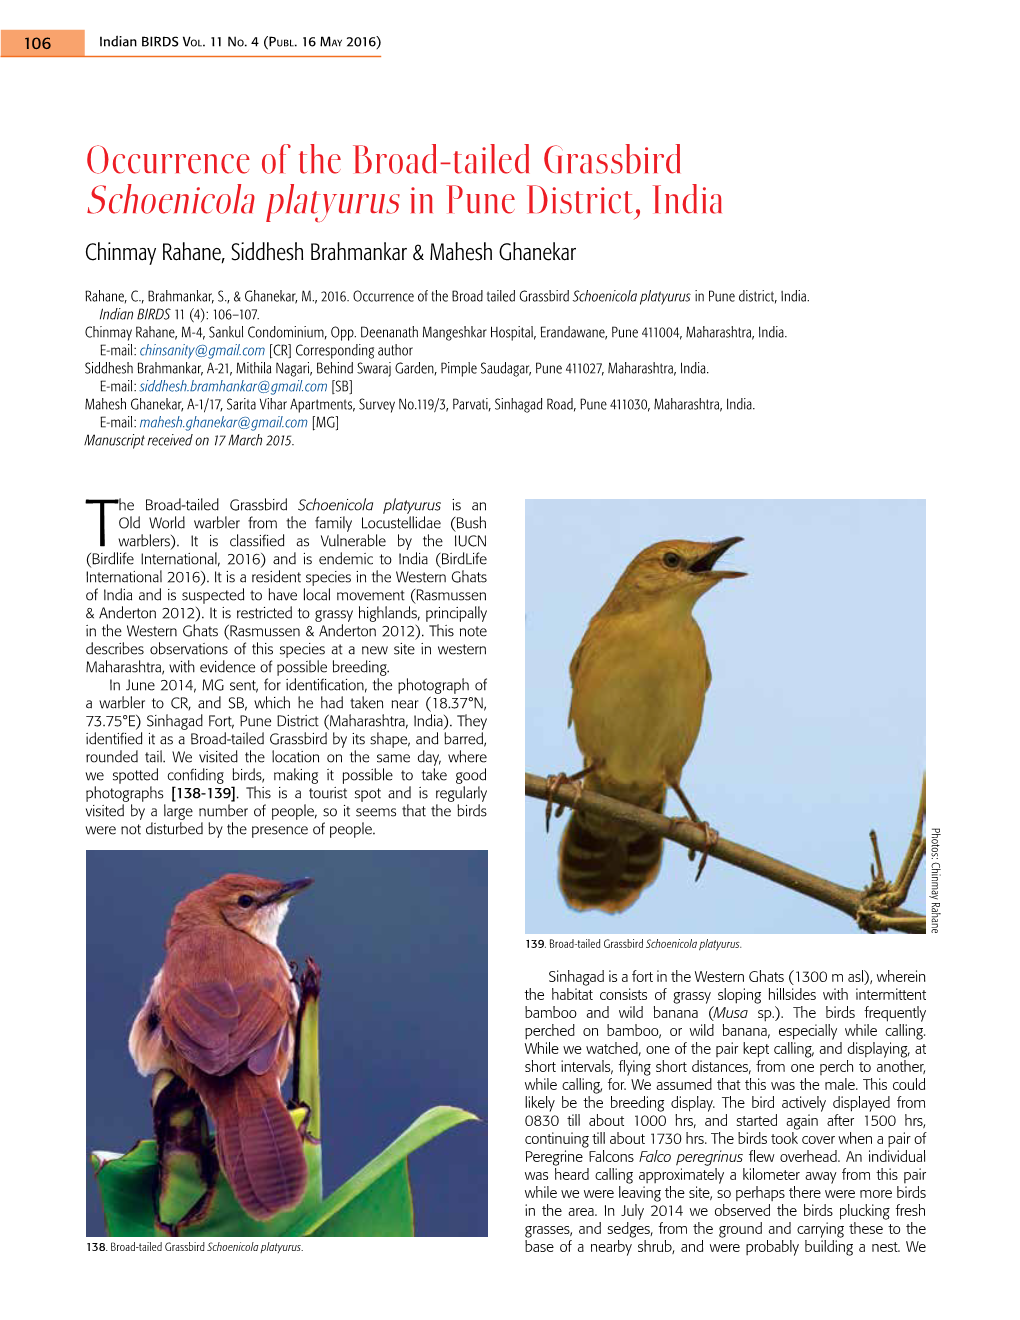 Occurrence of the Broad-Tailed Grassbird Schoenicola Platyurus in Pune District, India Chinmay Rahane, Siddhesh Brahmankar & Mahesh Ghanekar